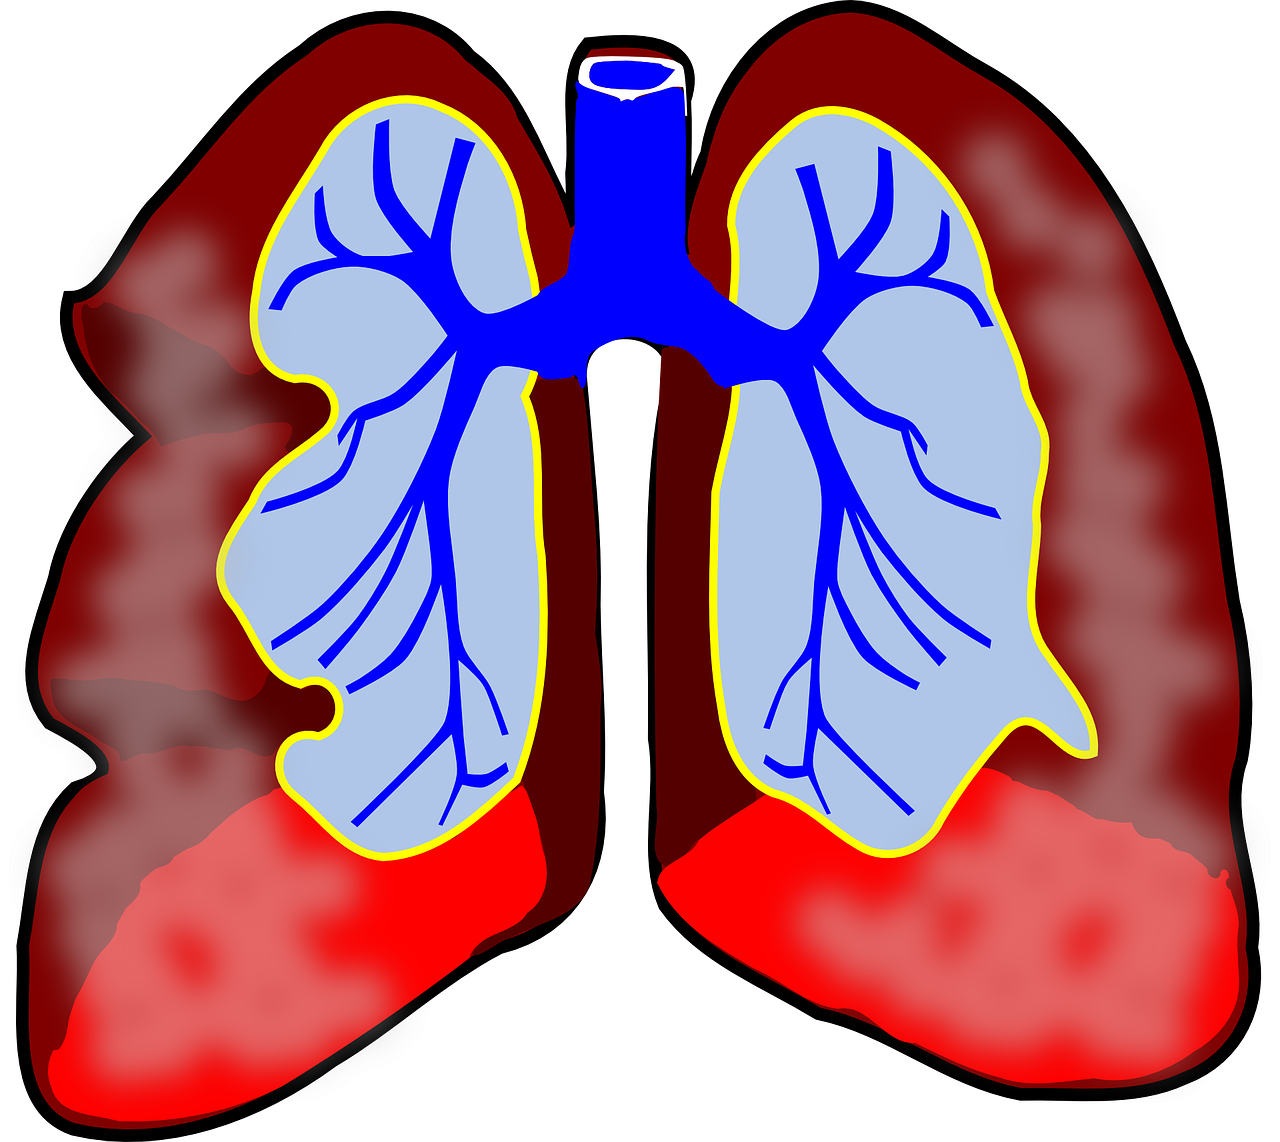 A tüdő megtisztítása a dohányzásról való leszokás, Tüdő tisztítása dohányosoknak - Sószoba Pécs